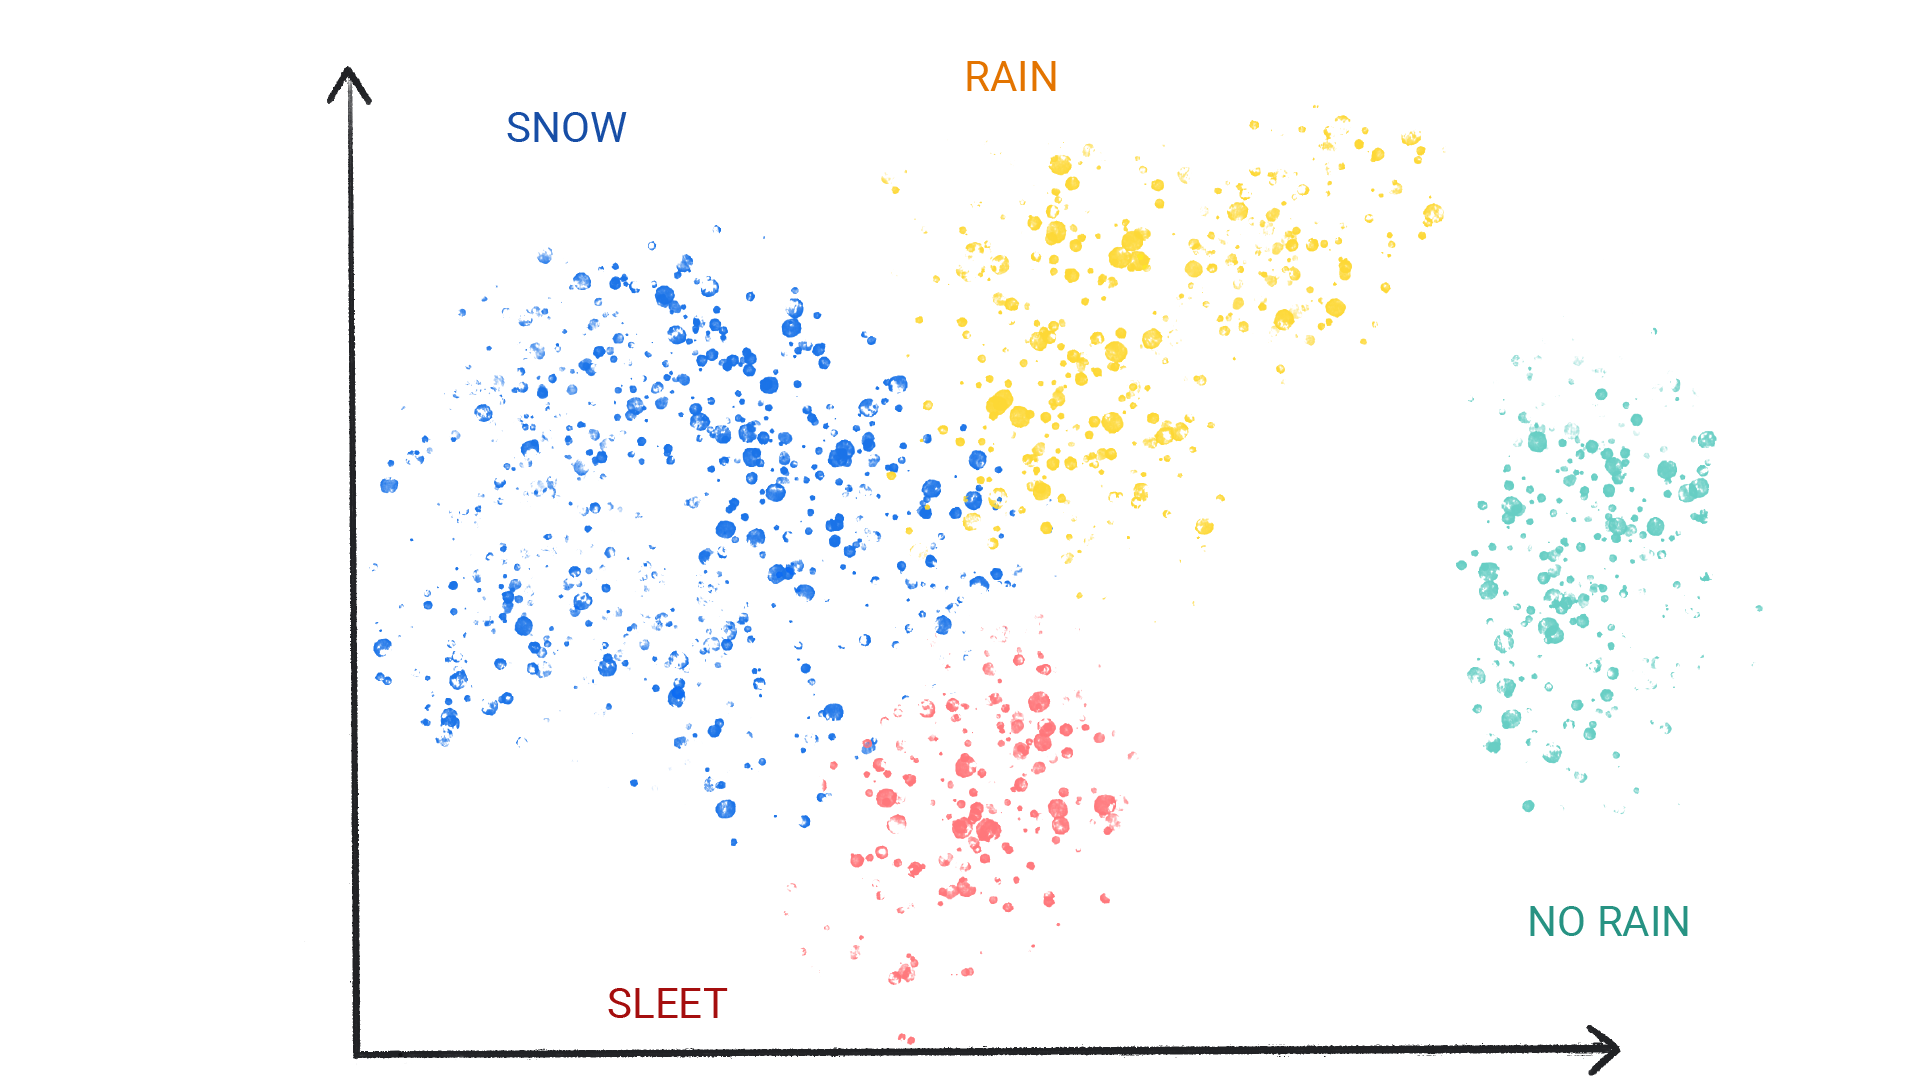 Hình ảnh hiển thị các chấm có màu thành từng cụm được gắn nhãn là tuyết, mưa, mưa đá và không có mưa.